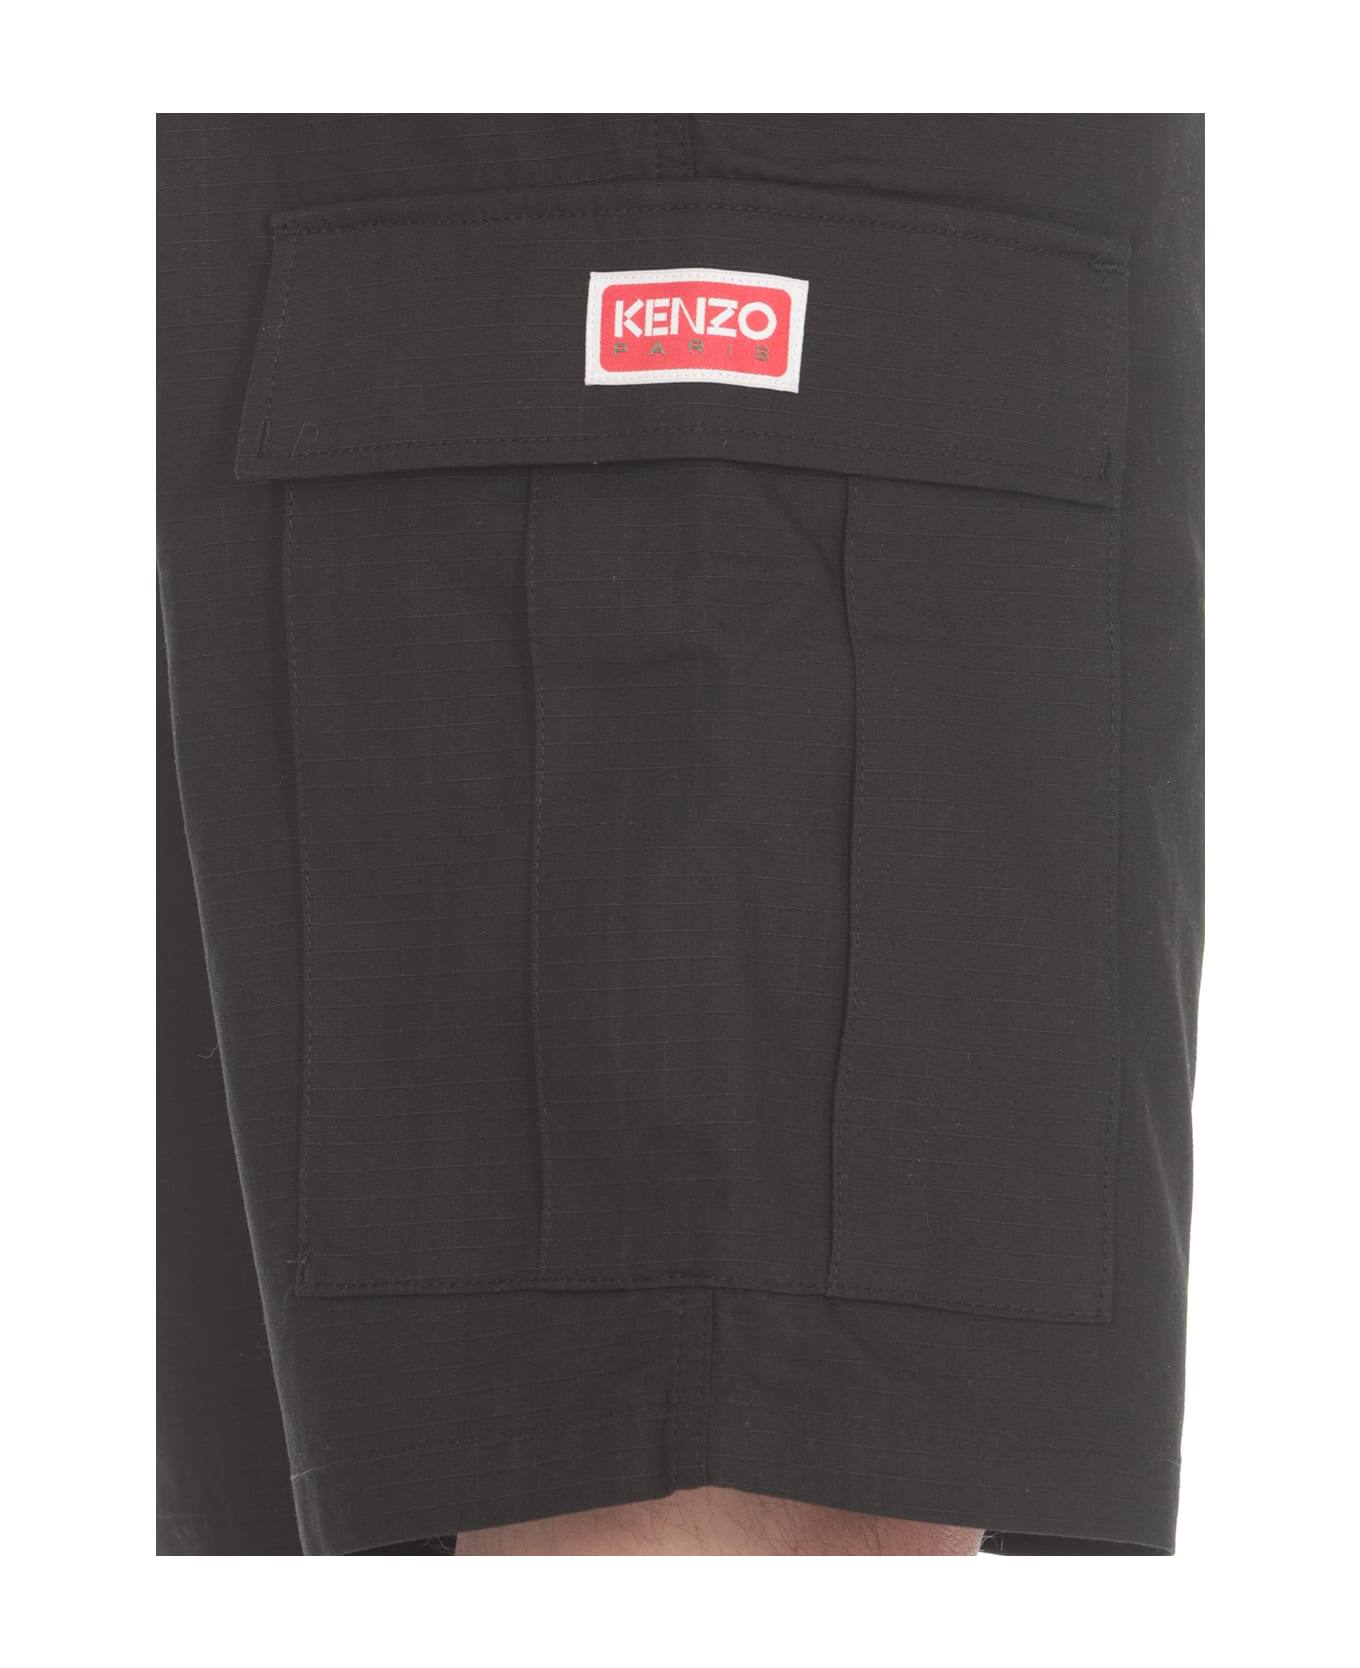 Kenzo Cargo Workwear Shorts - Black